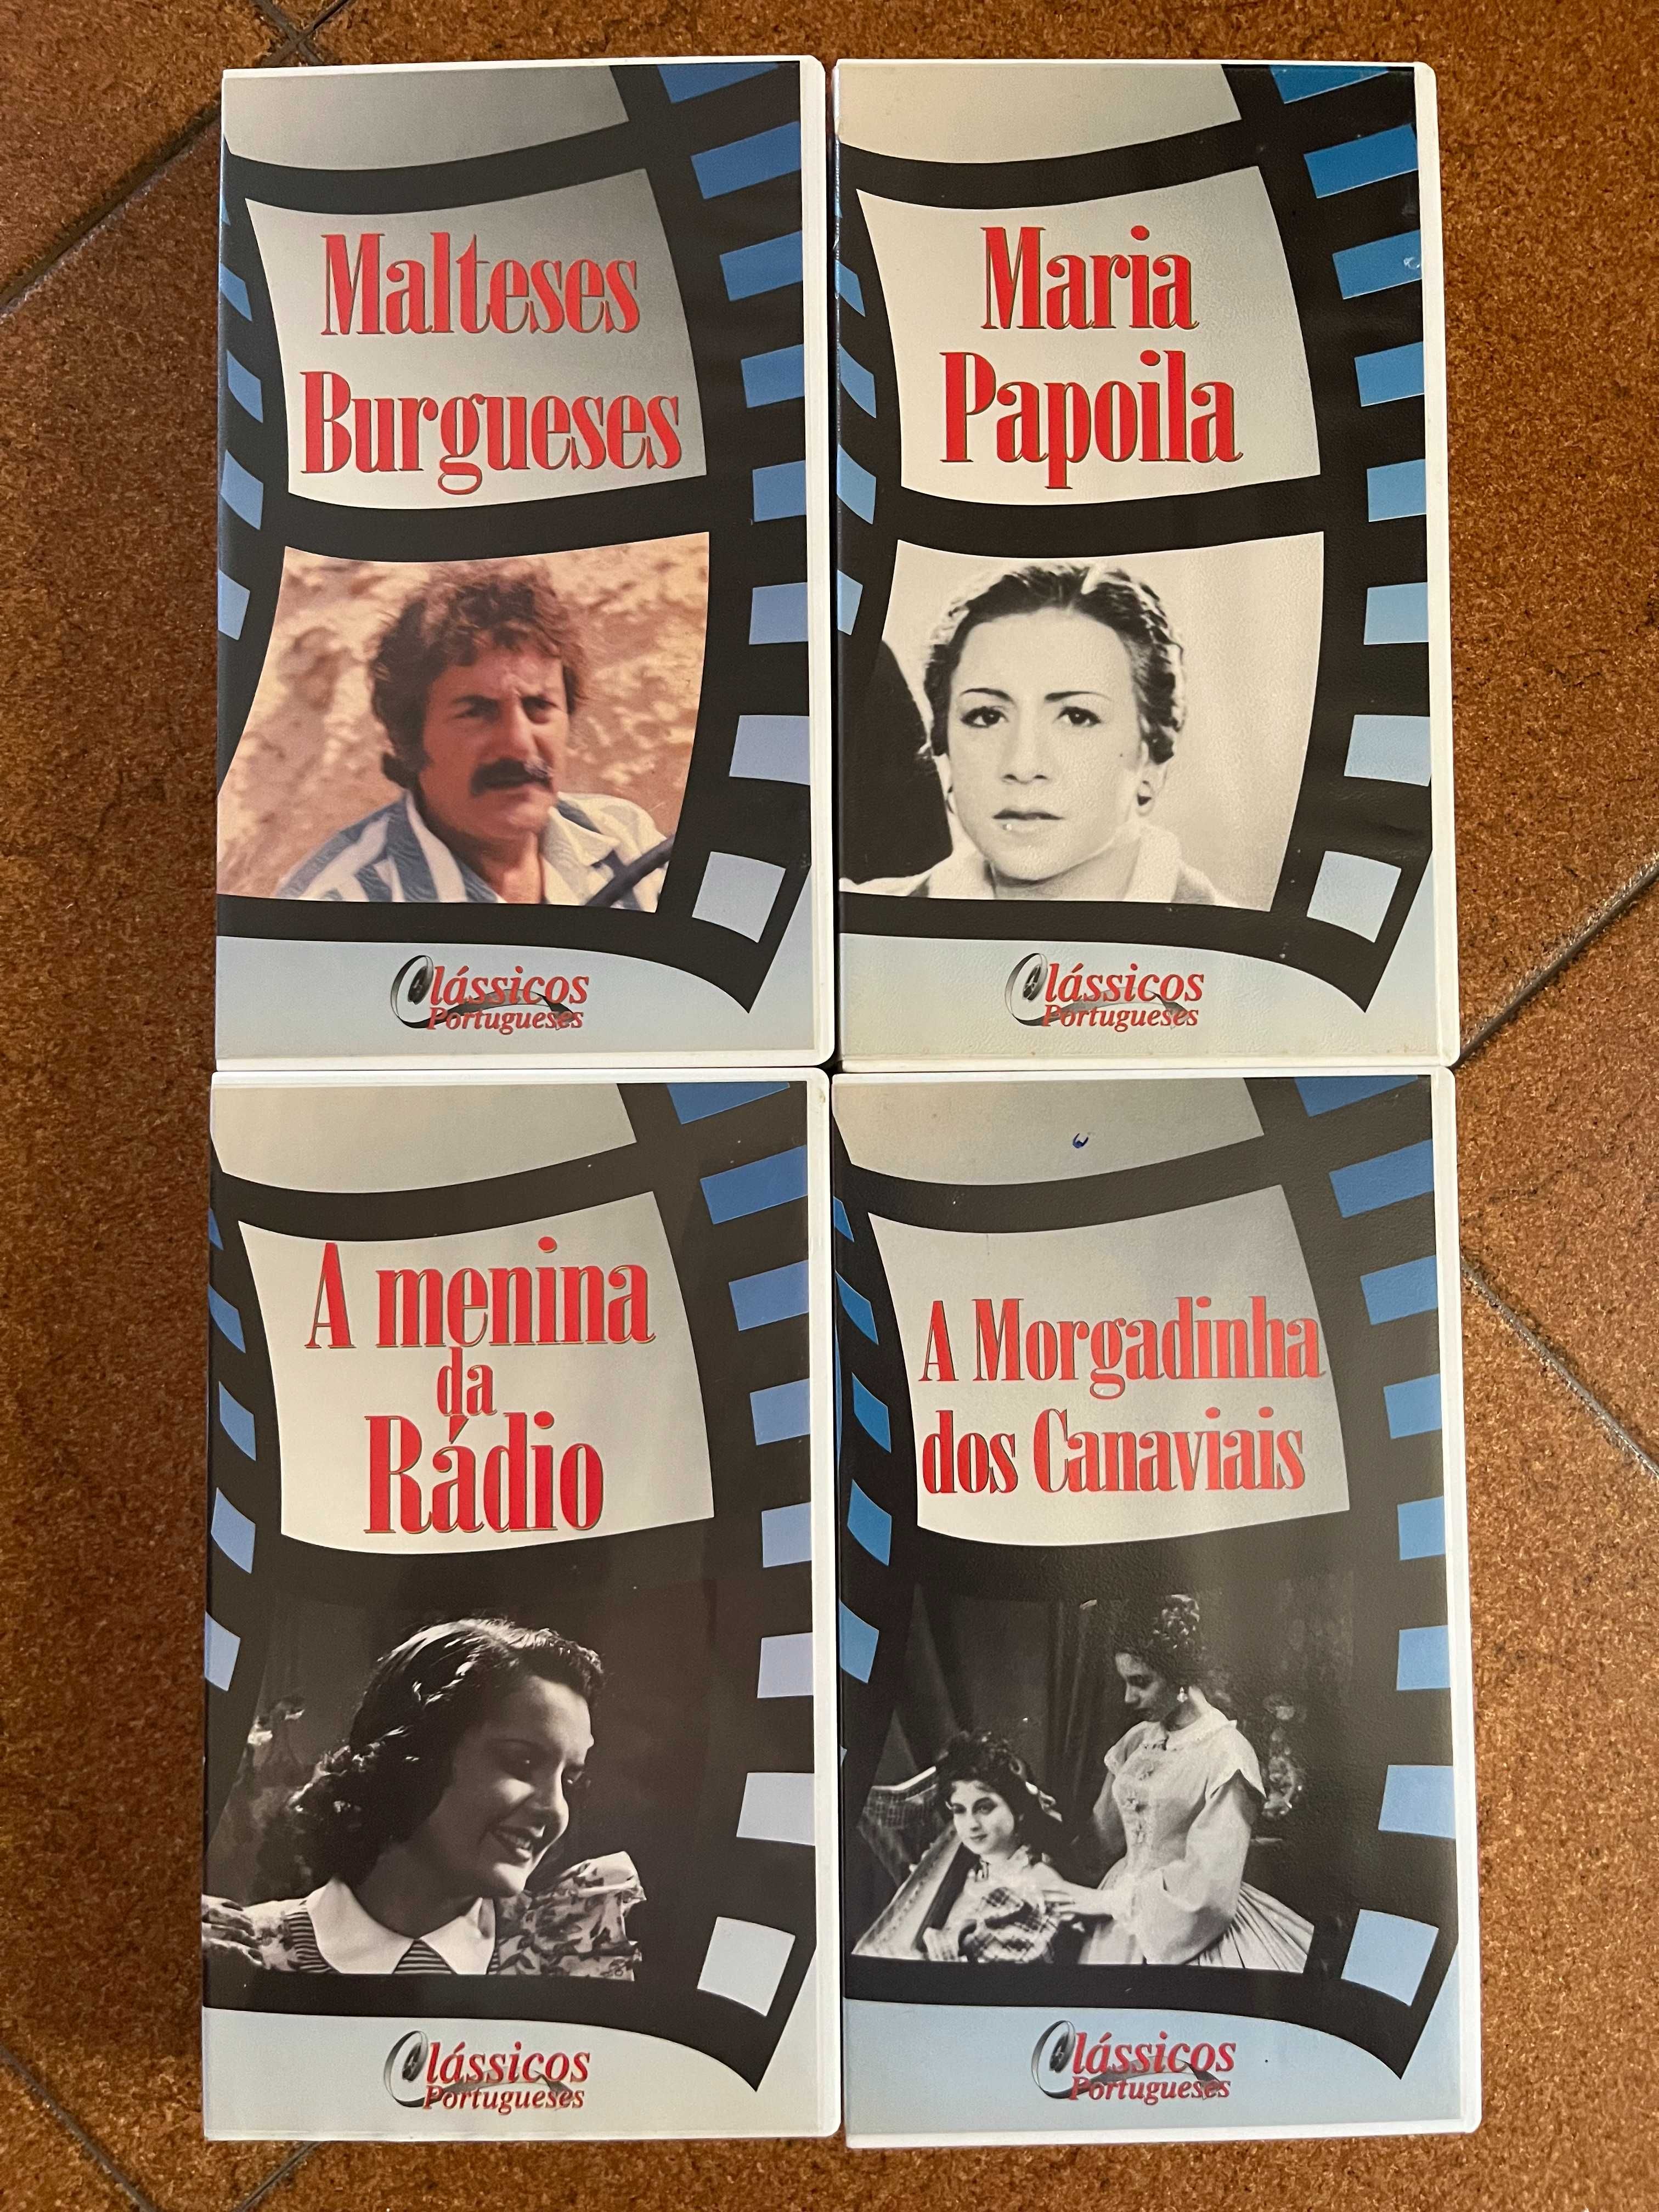 VHS Clássicos portugueses (1935-89)